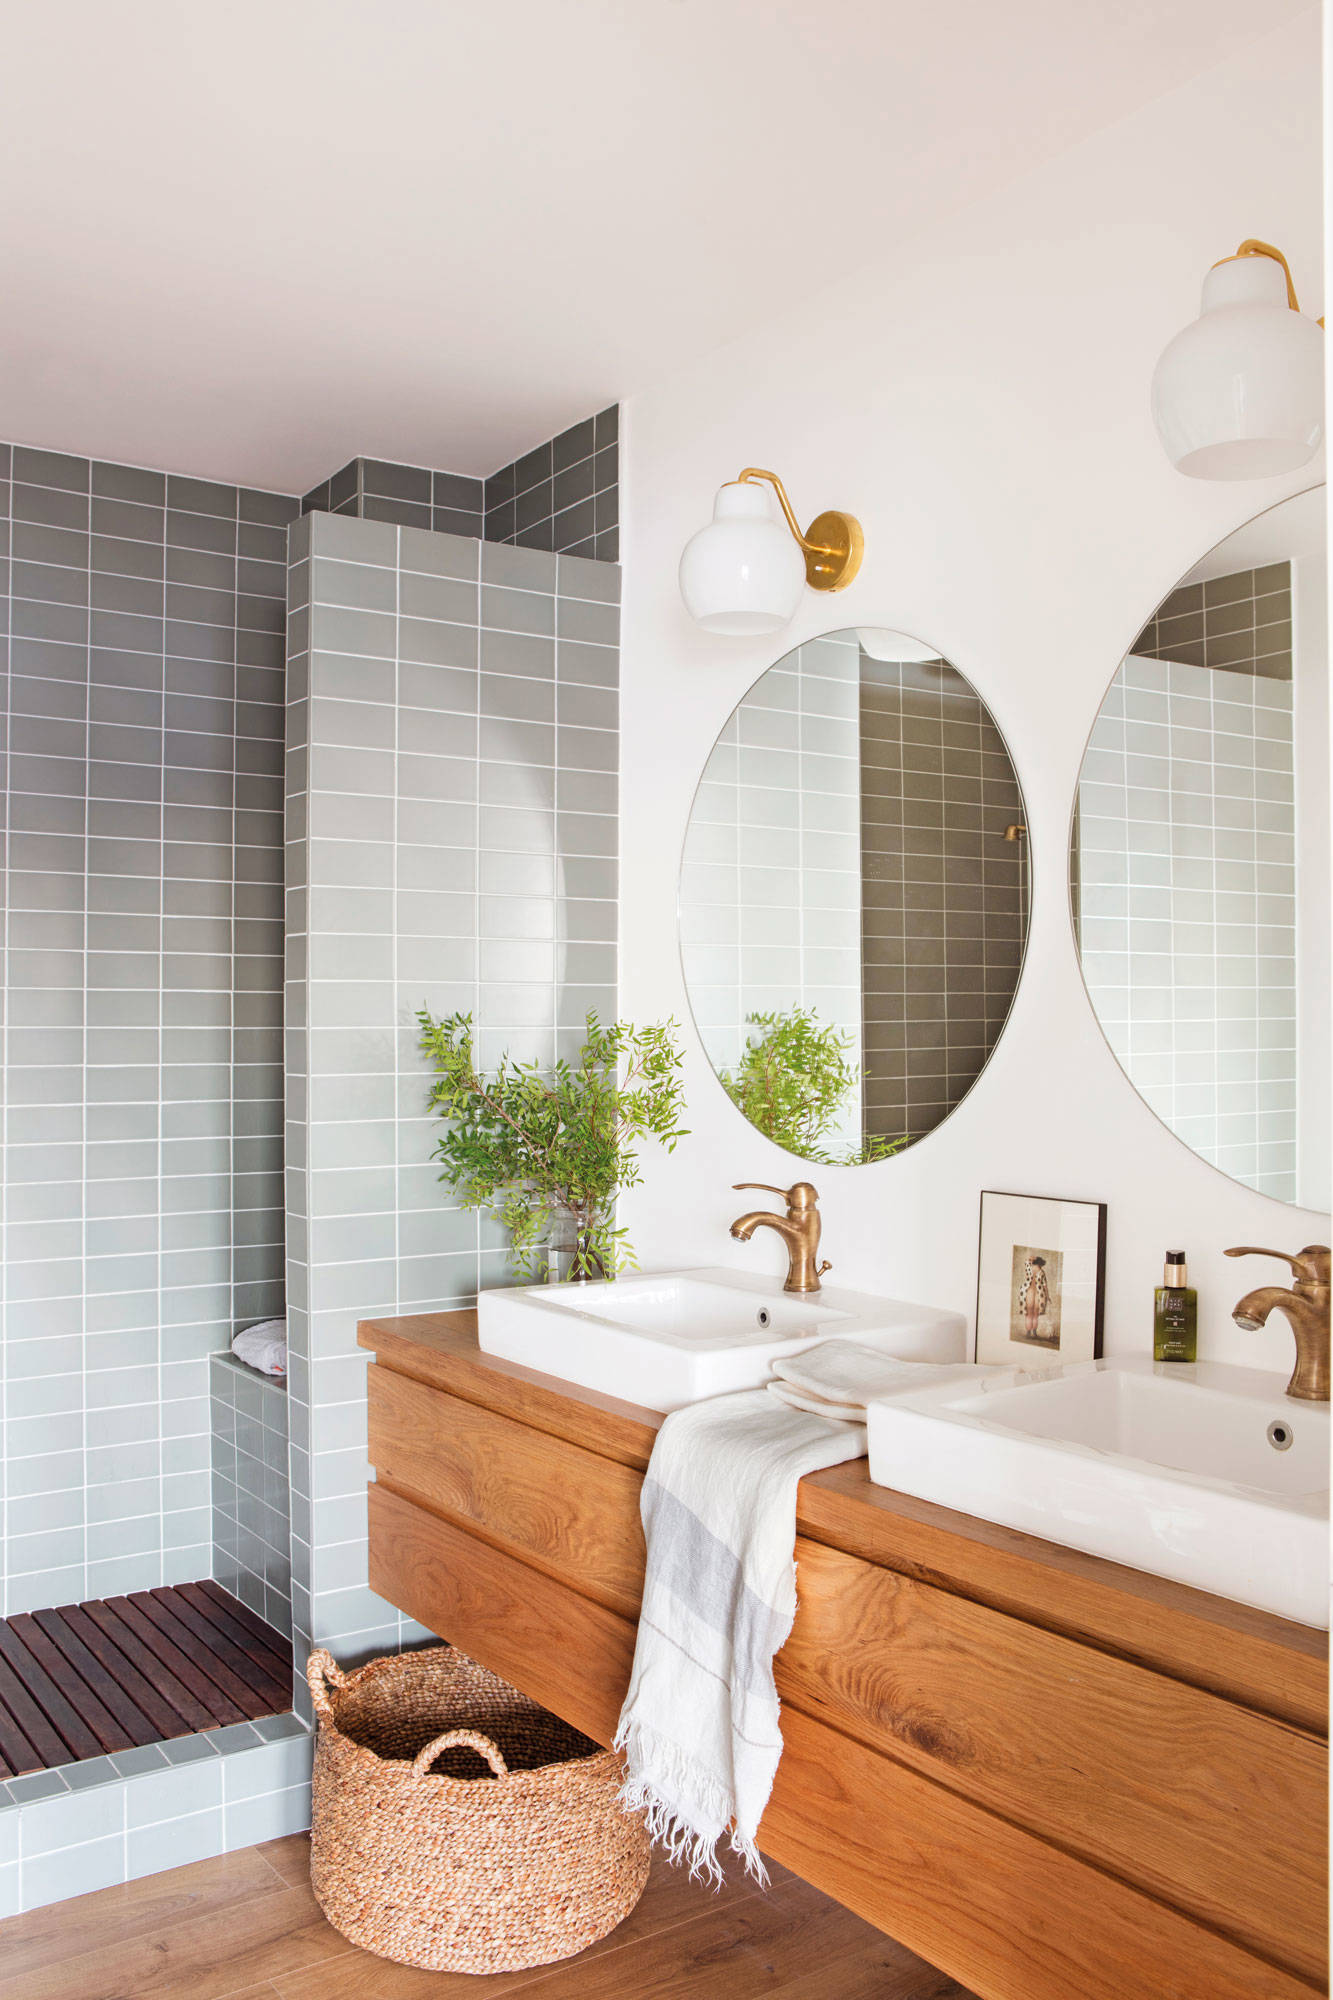 Baño con ducha separada por una pared revestida con azulejos.